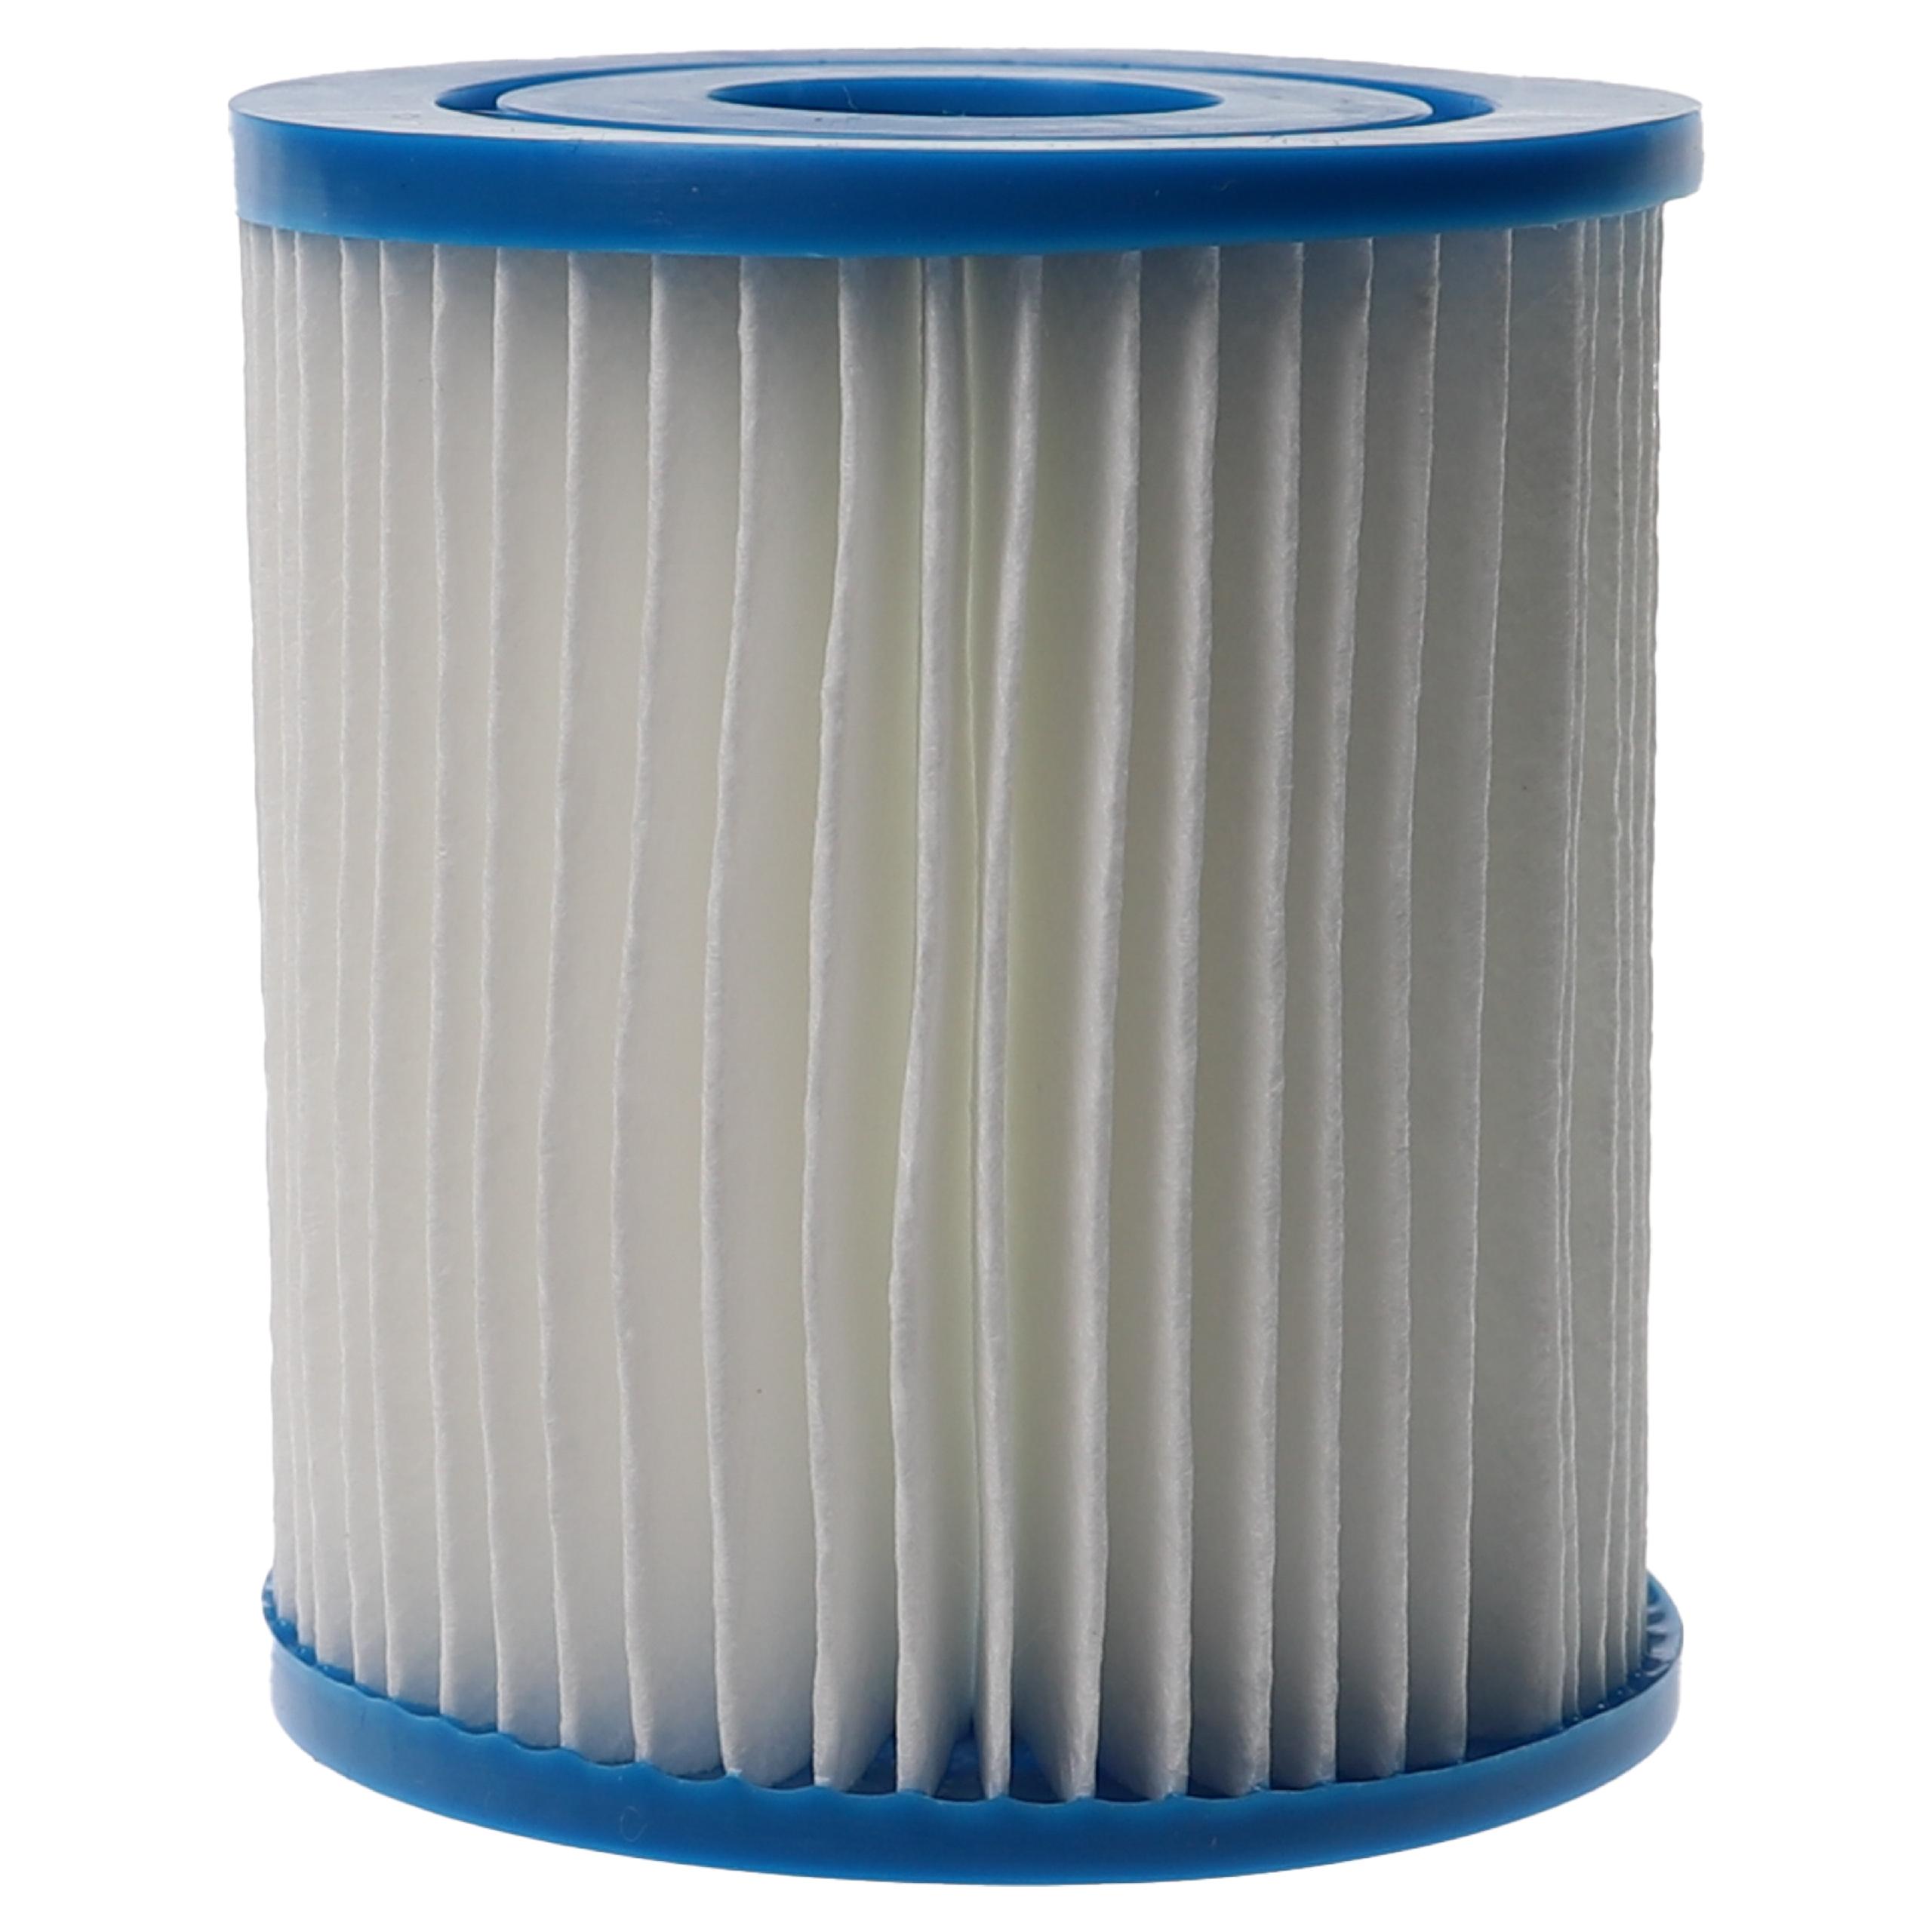 5x Wasserfilter als Ersatz für APC C7490 für Intex Swimmingpool & Filterpumpe u.a. - Filterkartusche